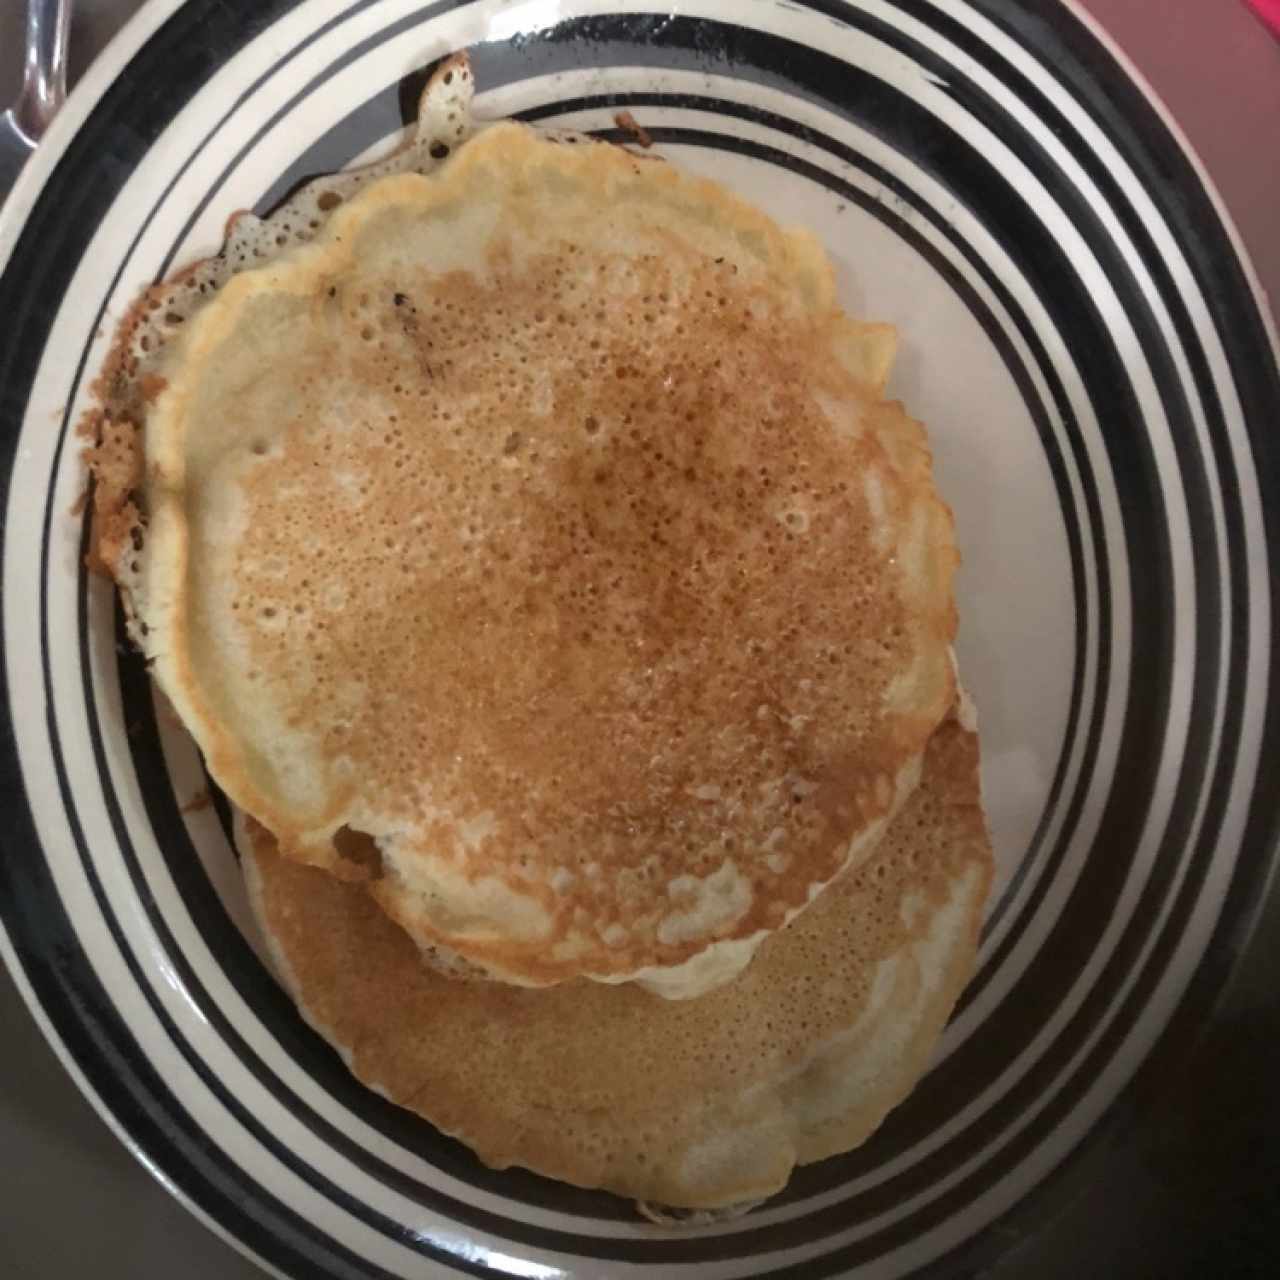 2 pancakes